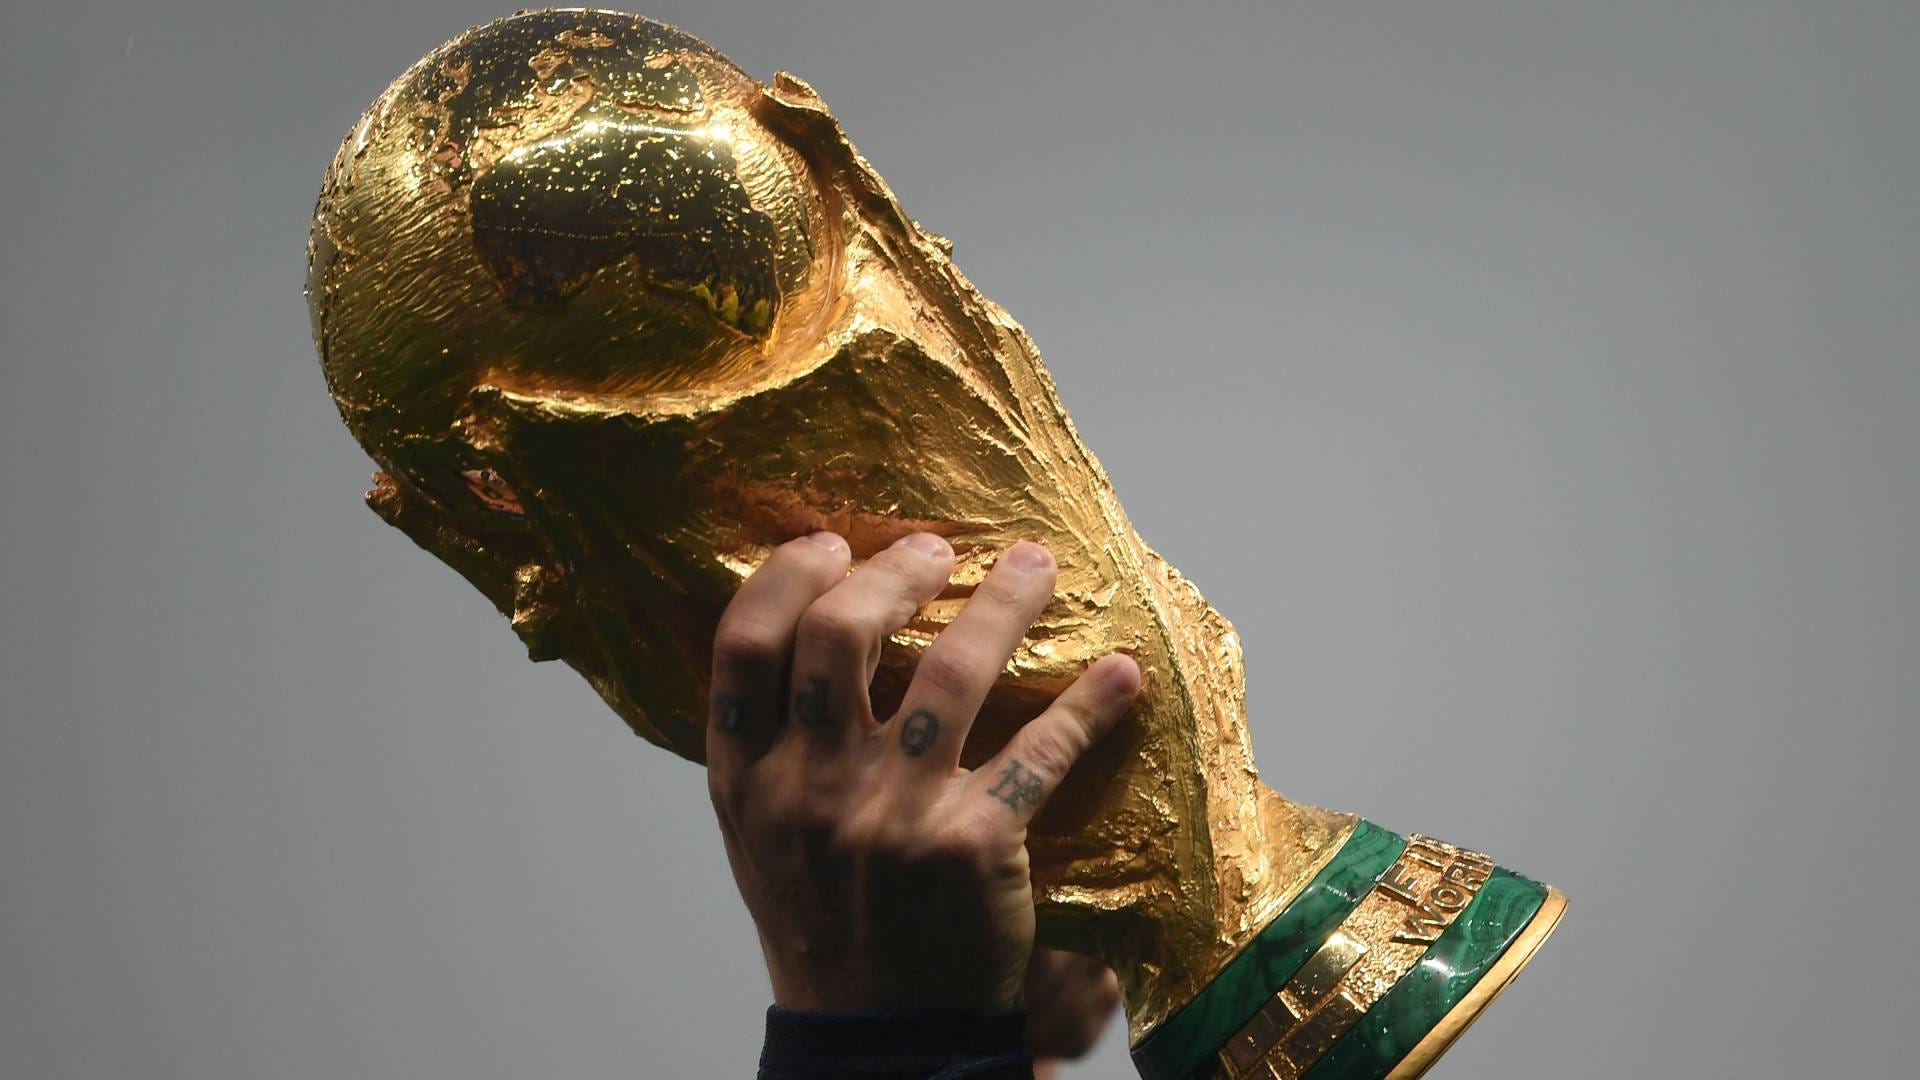 Germania, Brasile o Italia?  Chi ha vinto più campionati del mondo?